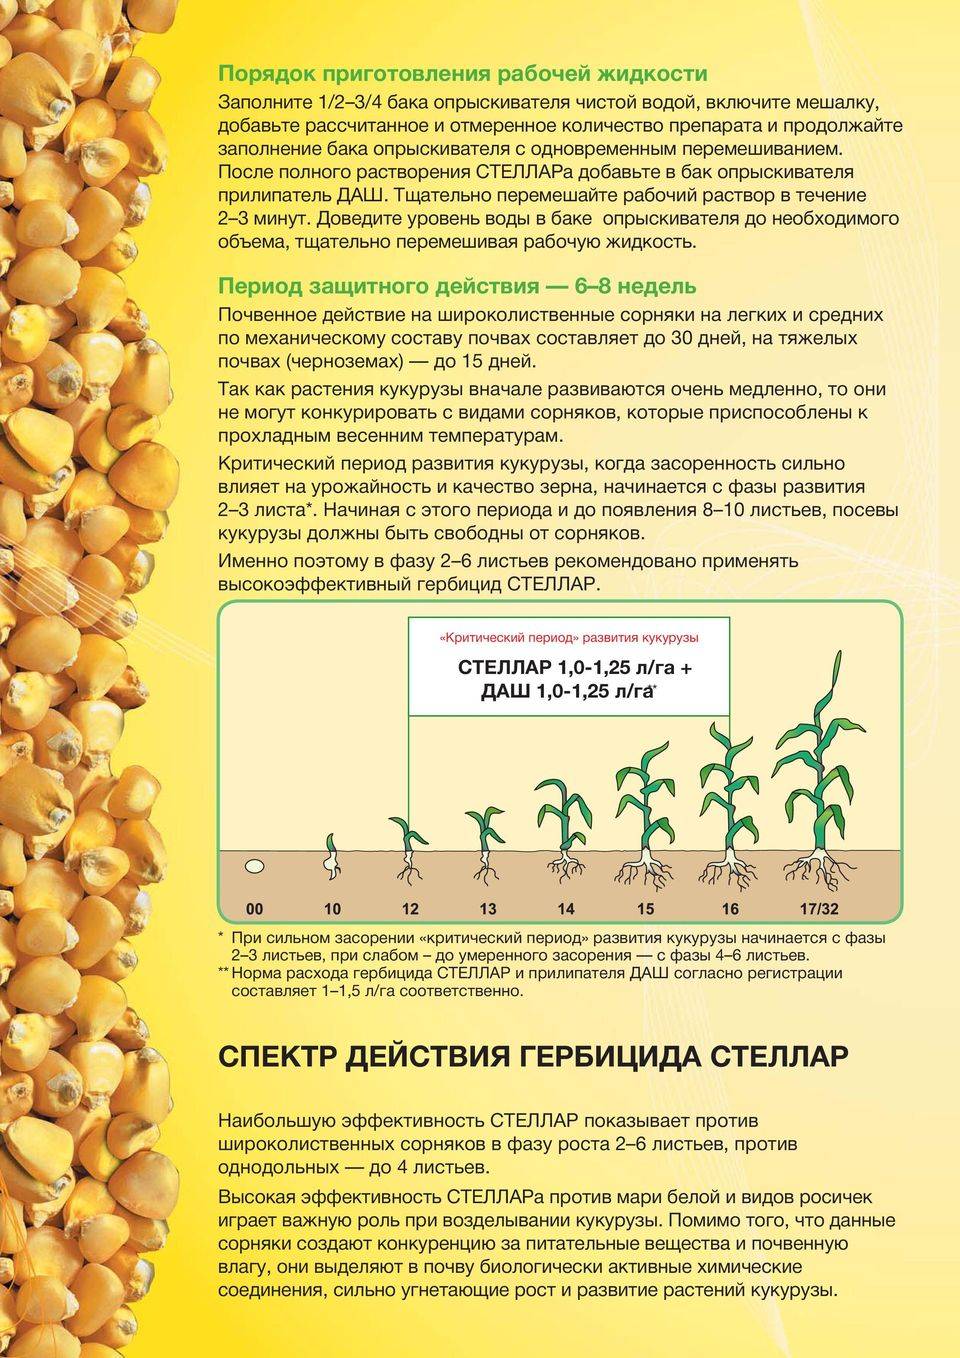 Стеллар — новый уровень системной агрозищиты саженцев кукурузы